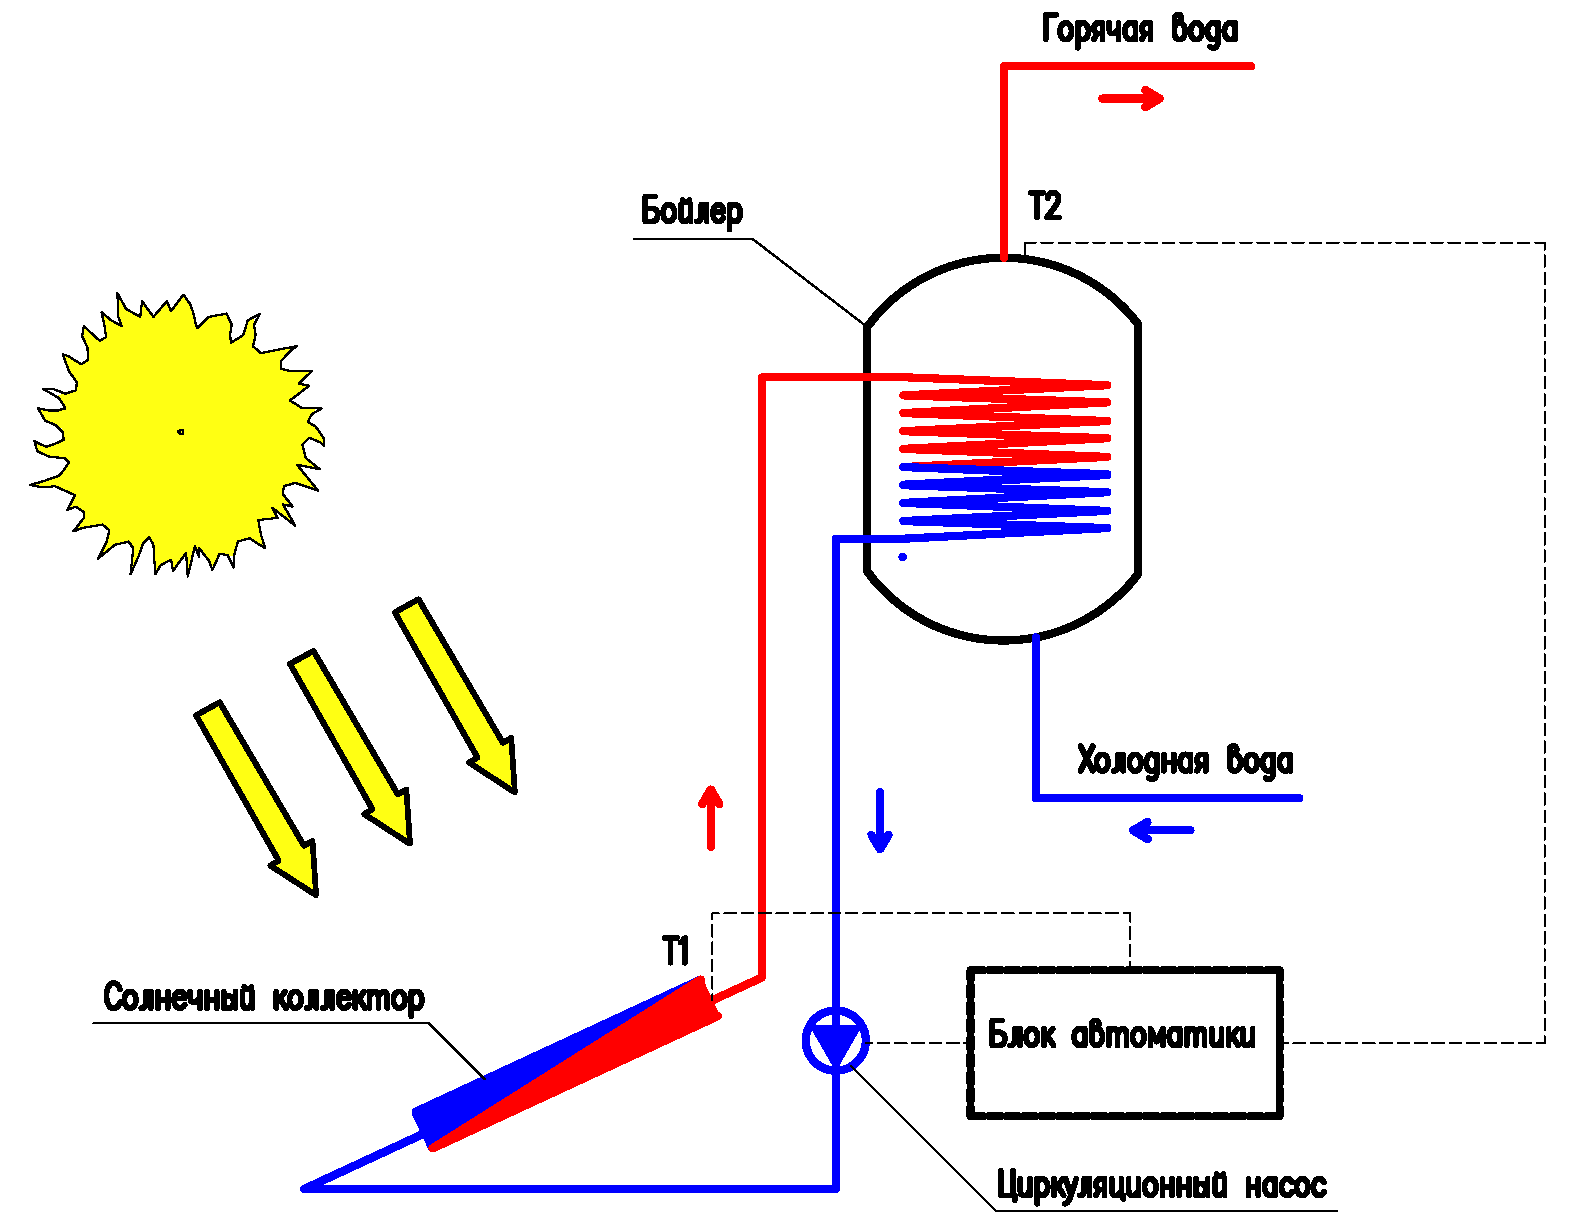 Завдання автоматики - управляти насосом з метою запобігання перегріву бойлера і скидання тепла в навколишнє середовище через сонячний колектор